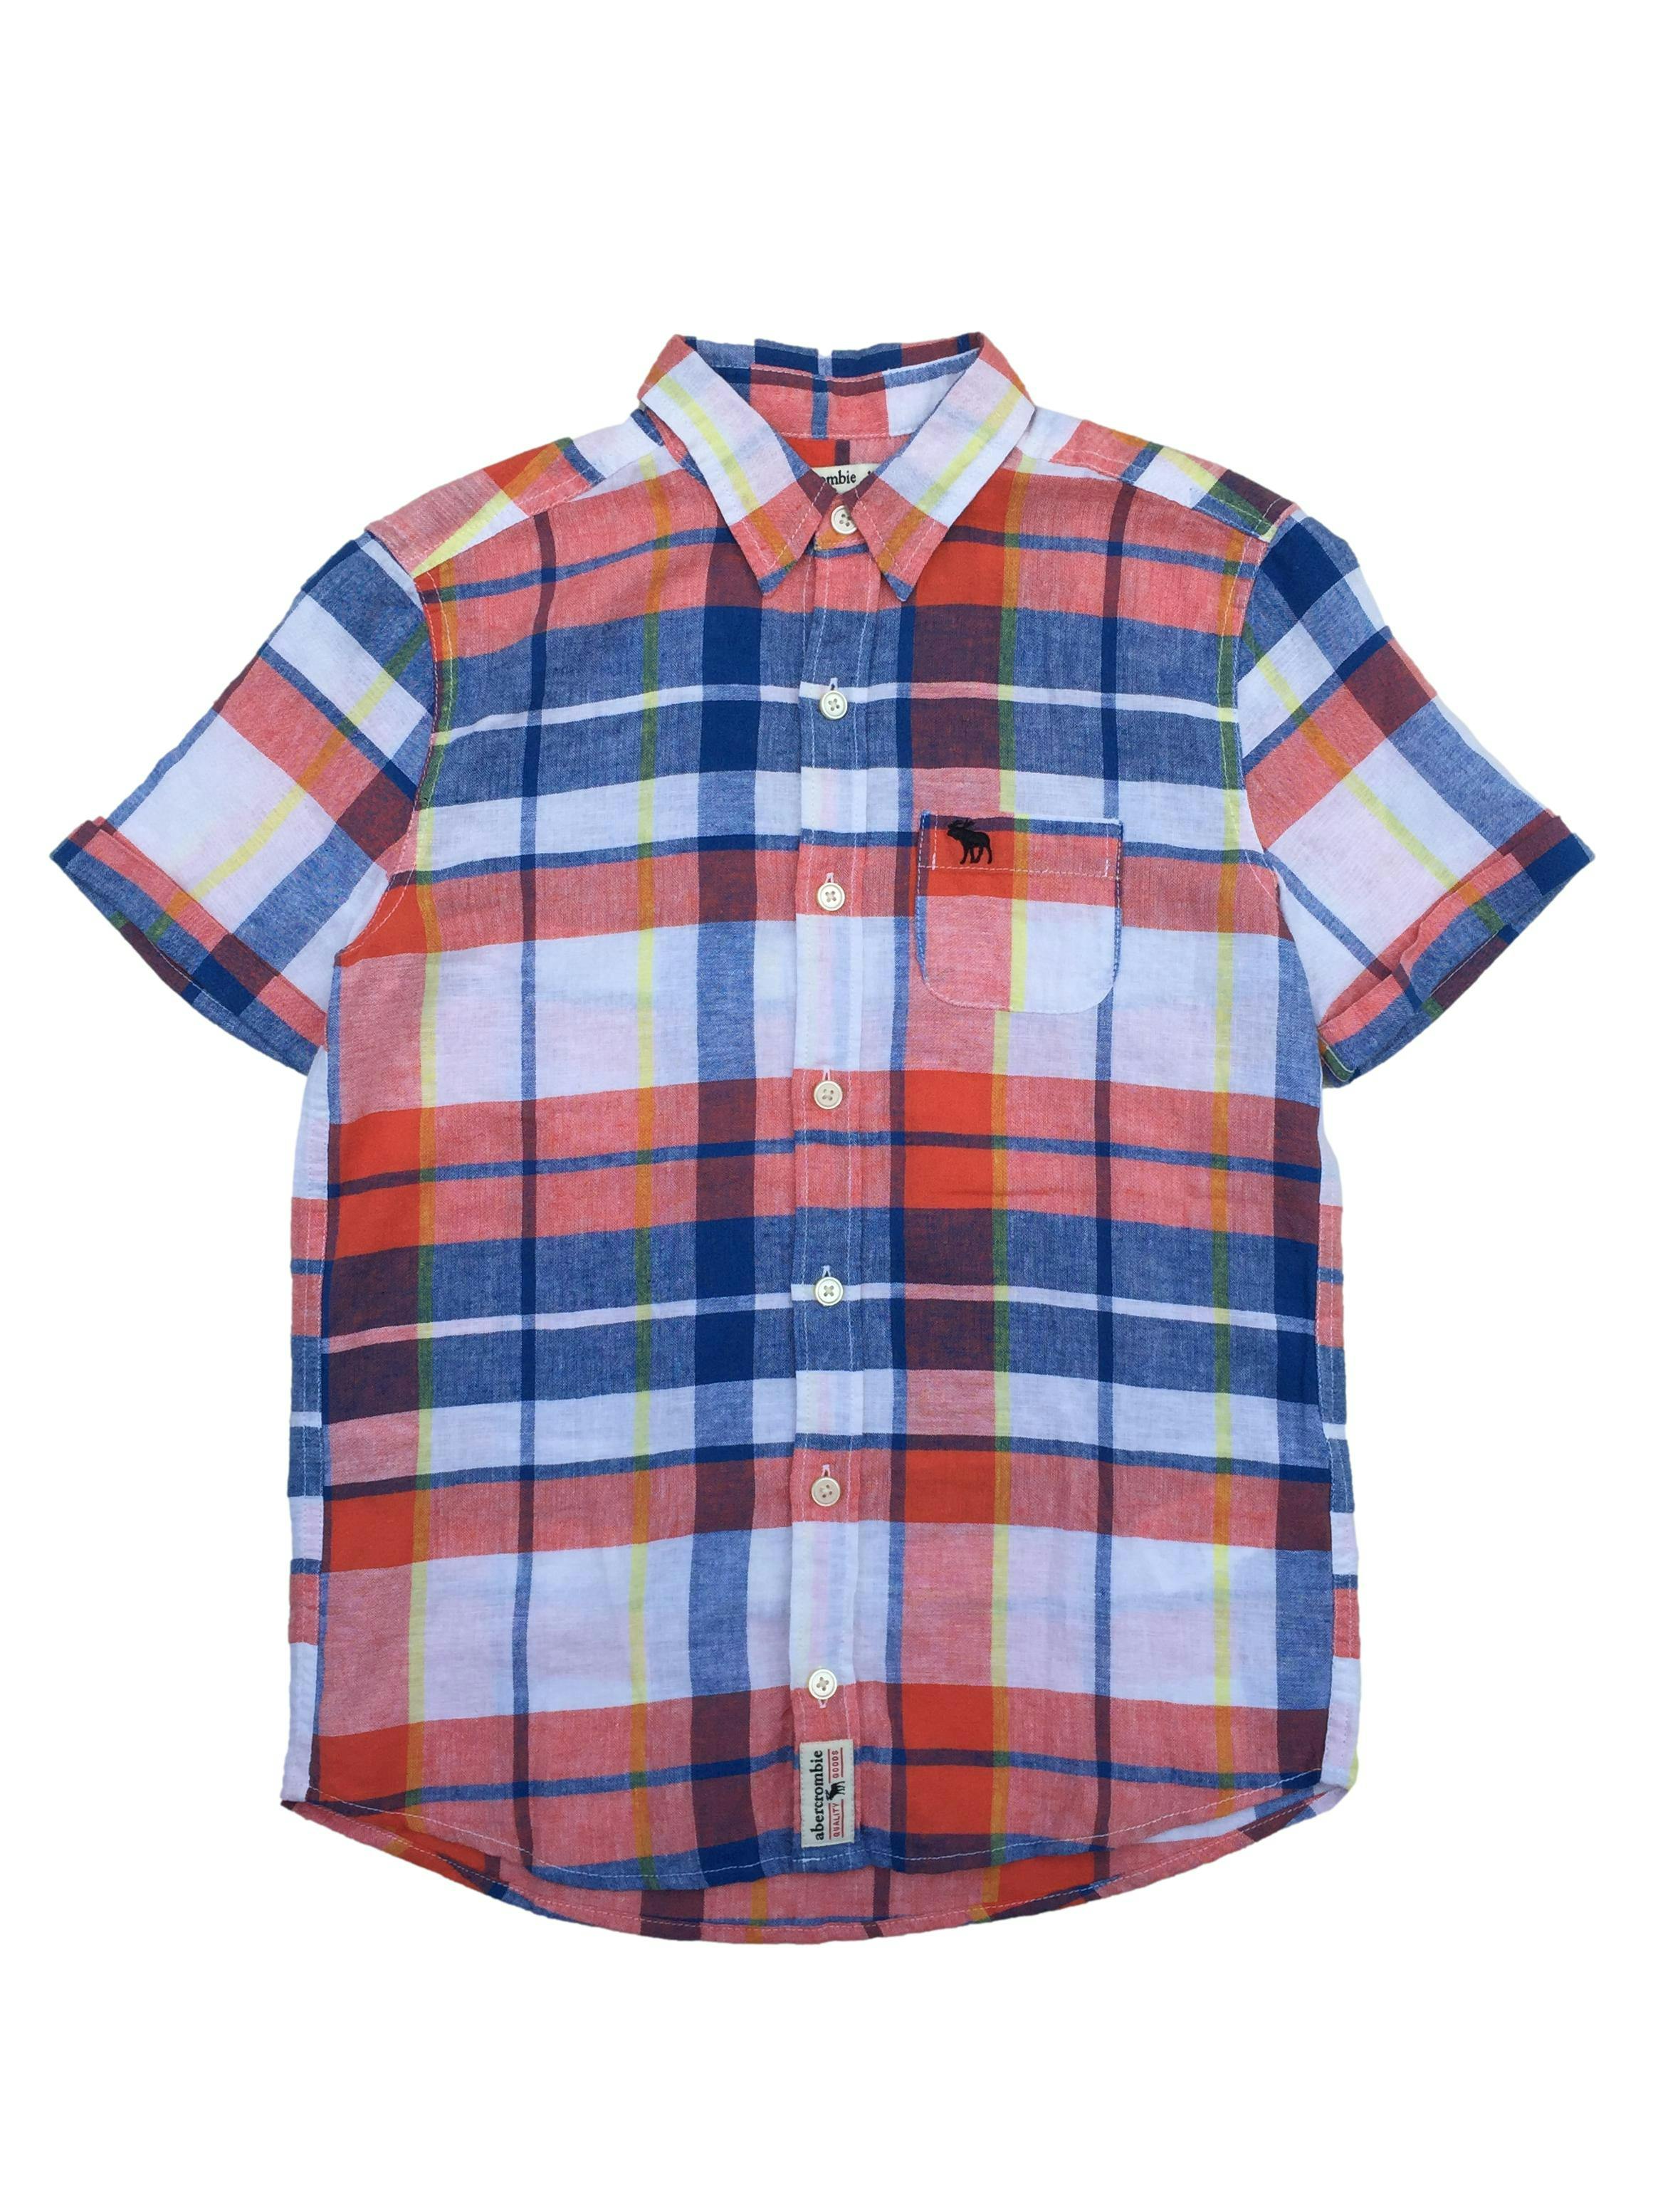 Camisa Abercrombie a cuadros anaranjados, azules y blancos, mezcla de lino y algodón.